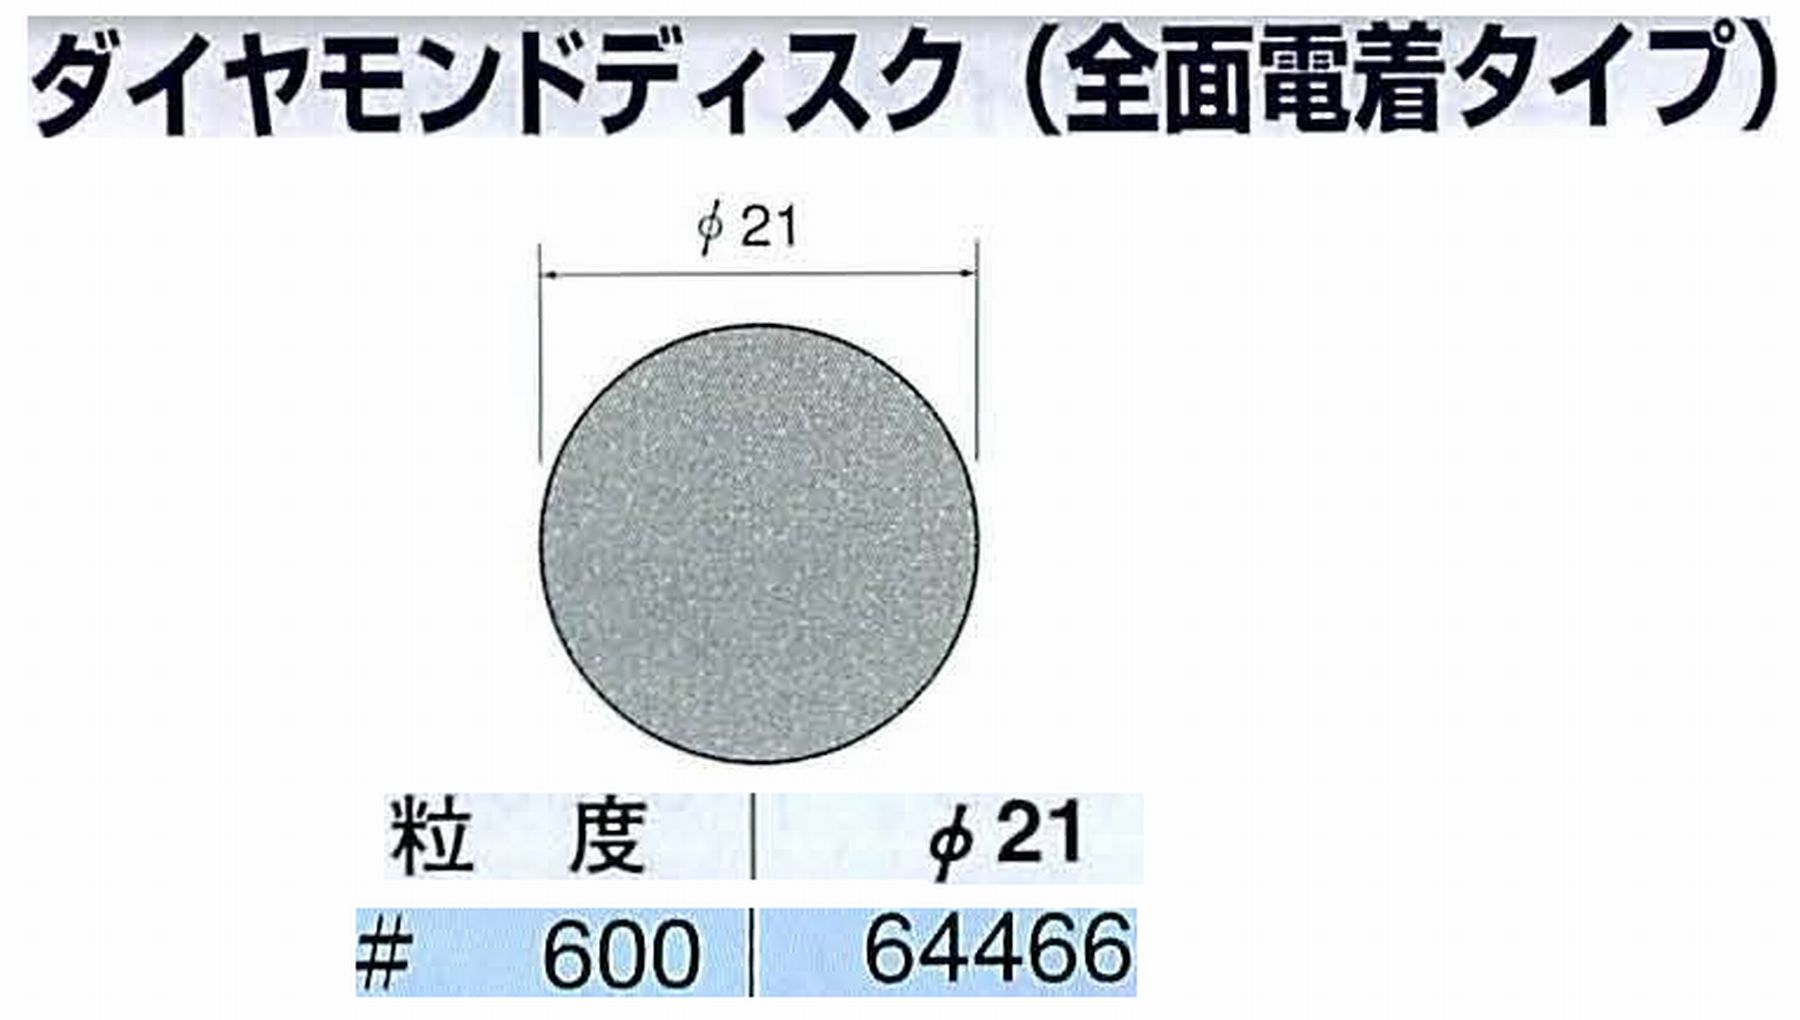 ナカニシ/NAKANISHI アングルグラインダ(電動・エアー) アングルアタッチメント専用工具 ダイヤモンドディスク(全面電着タイプ) 64466